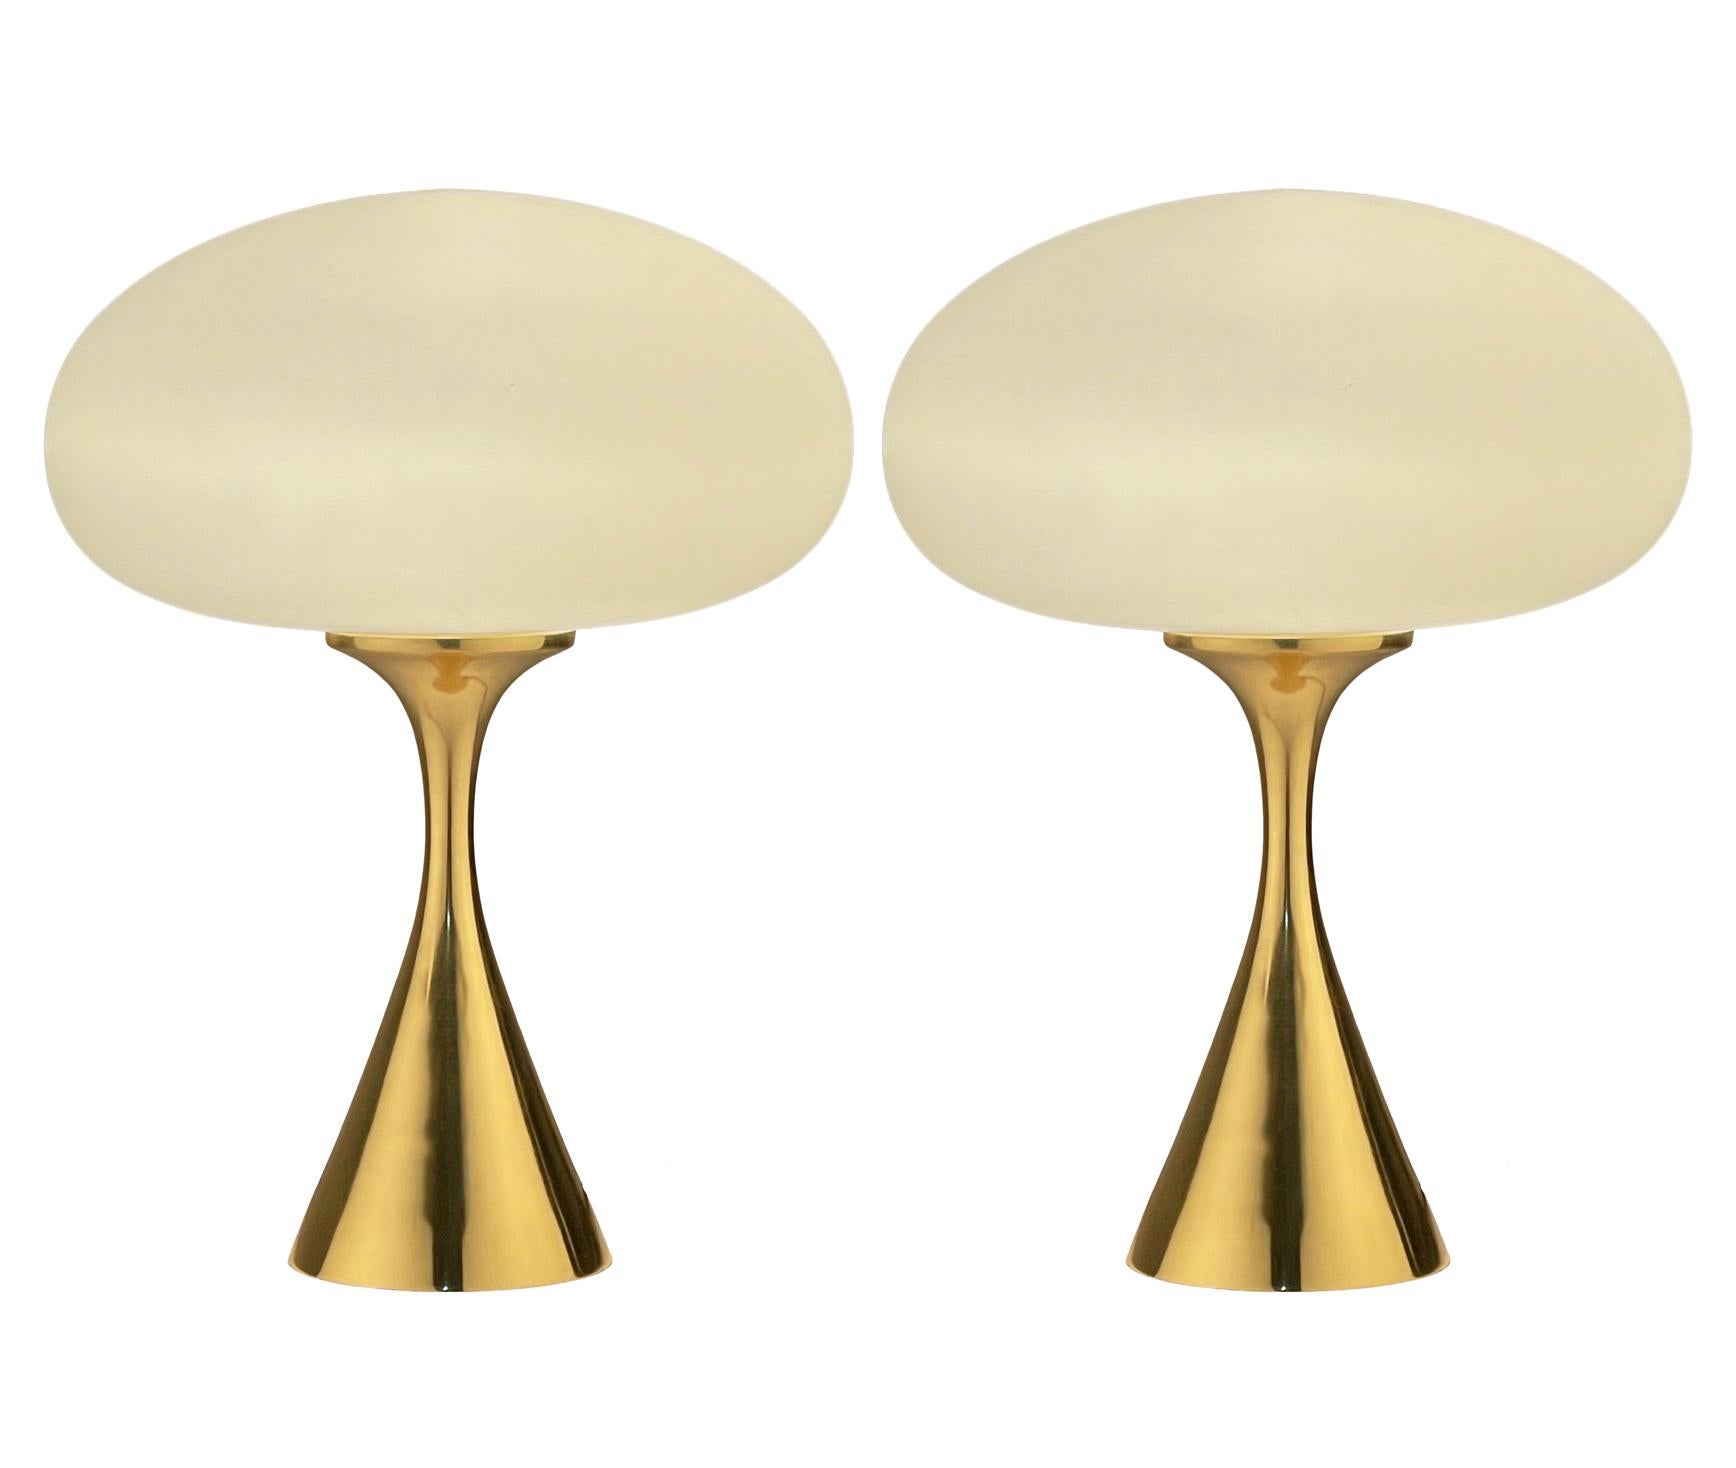 Une belle paire de lampes de table assorties en forme de champignon conique d'après Laurel Lamp Company. Les lampes sont dotées d'une base en fonte d'aluminium plaquée laiton et d'un abat-jour en verre dépoli soufflé à la bouche. Le prix comprend la